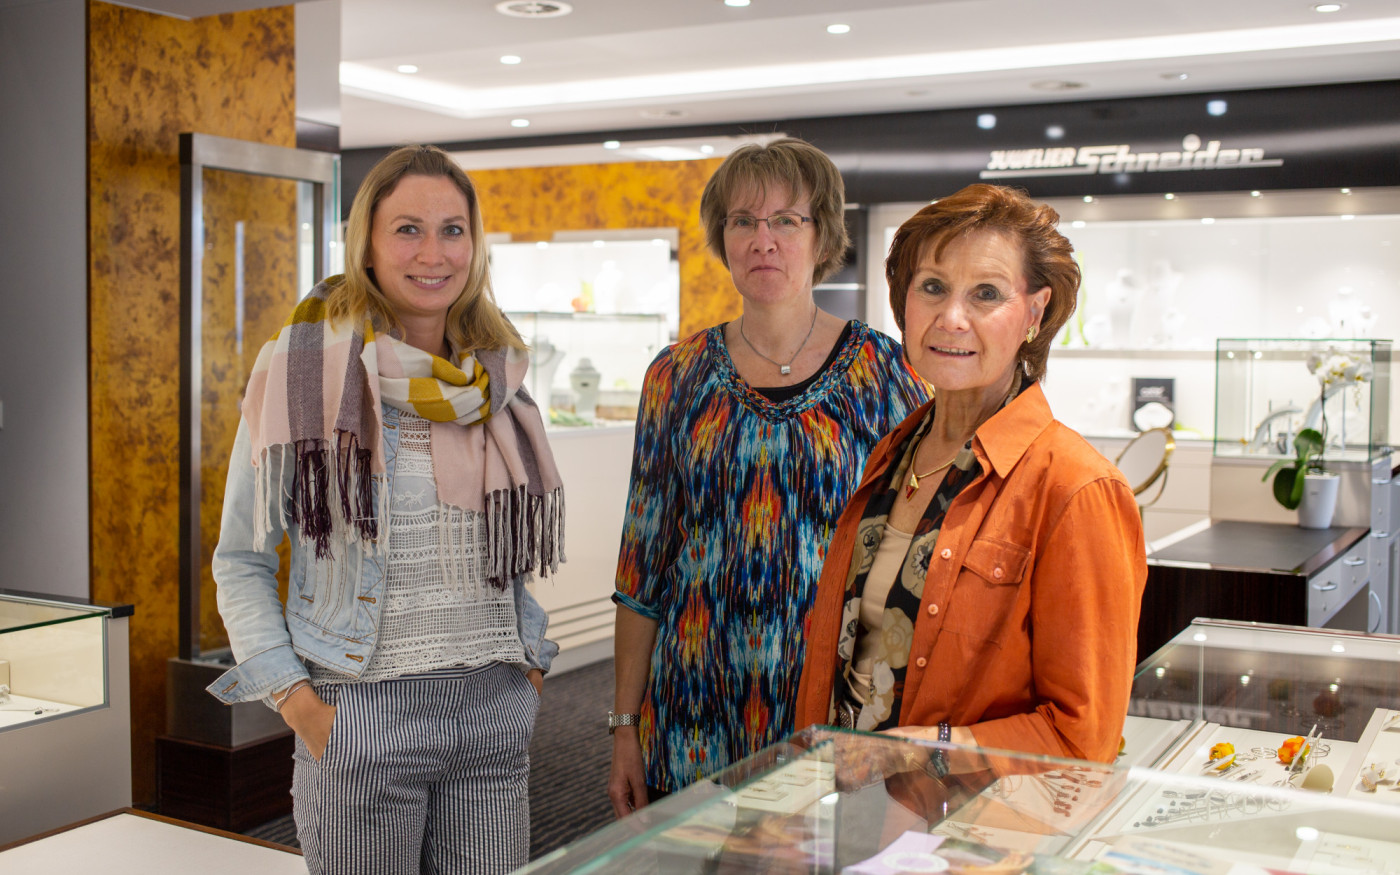 Juwelier Schneider in Gifhorn stellt die neue Frühlings- und Muttertagskollektion vor